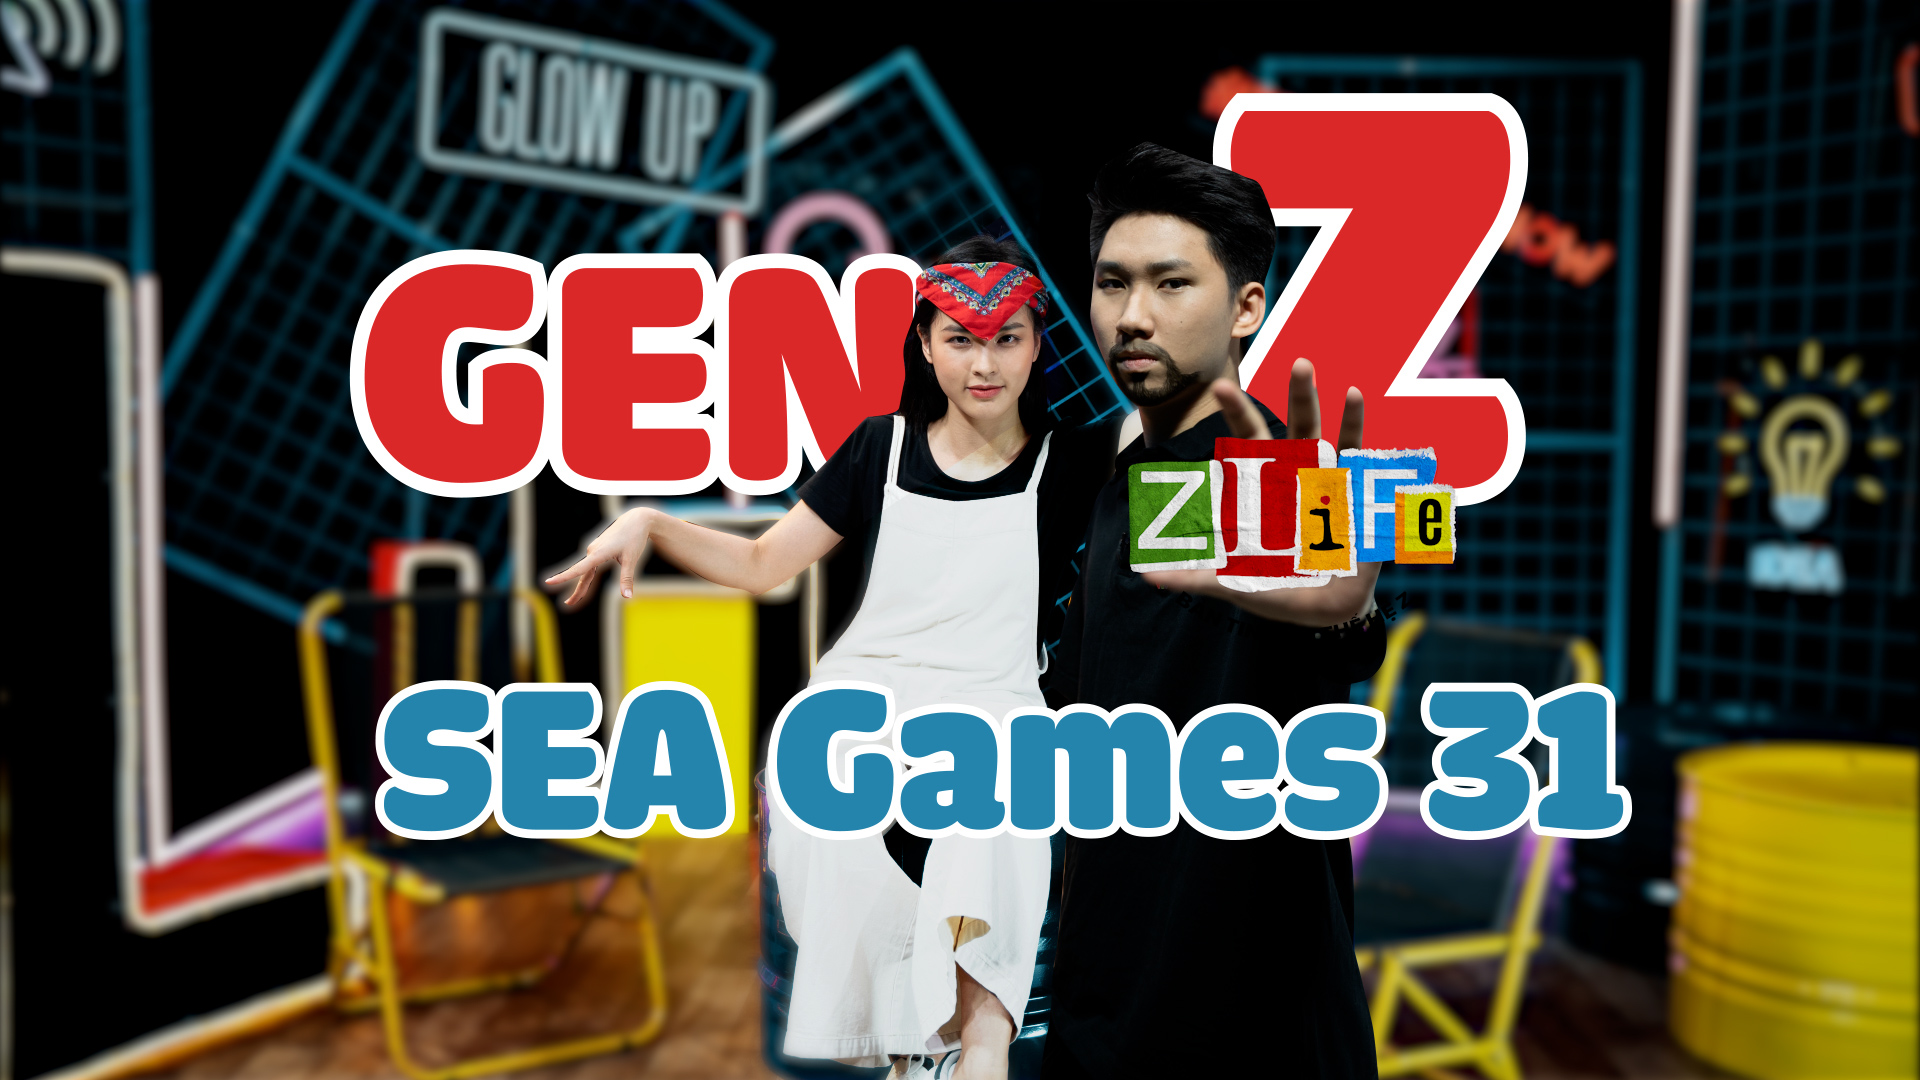 Bản tin Zlife #7 | Kỳ SEA Games 31 này, các bạn GenZ làm gì?